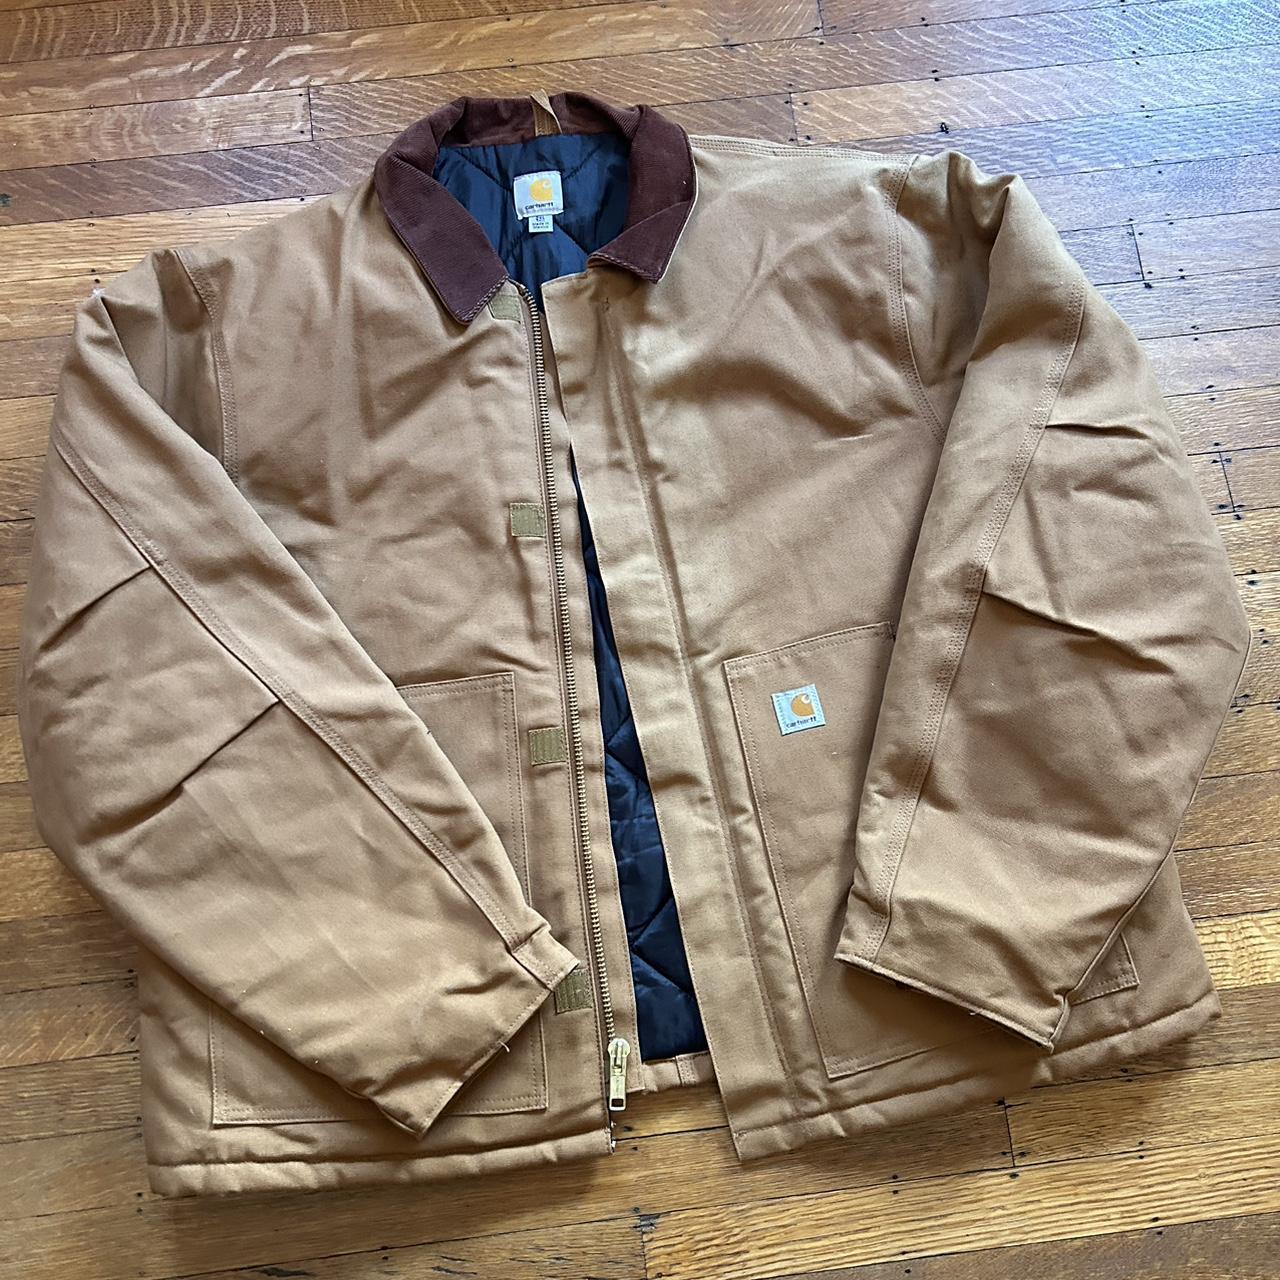 Carhartt workwear jacket like new size XXL - Depop